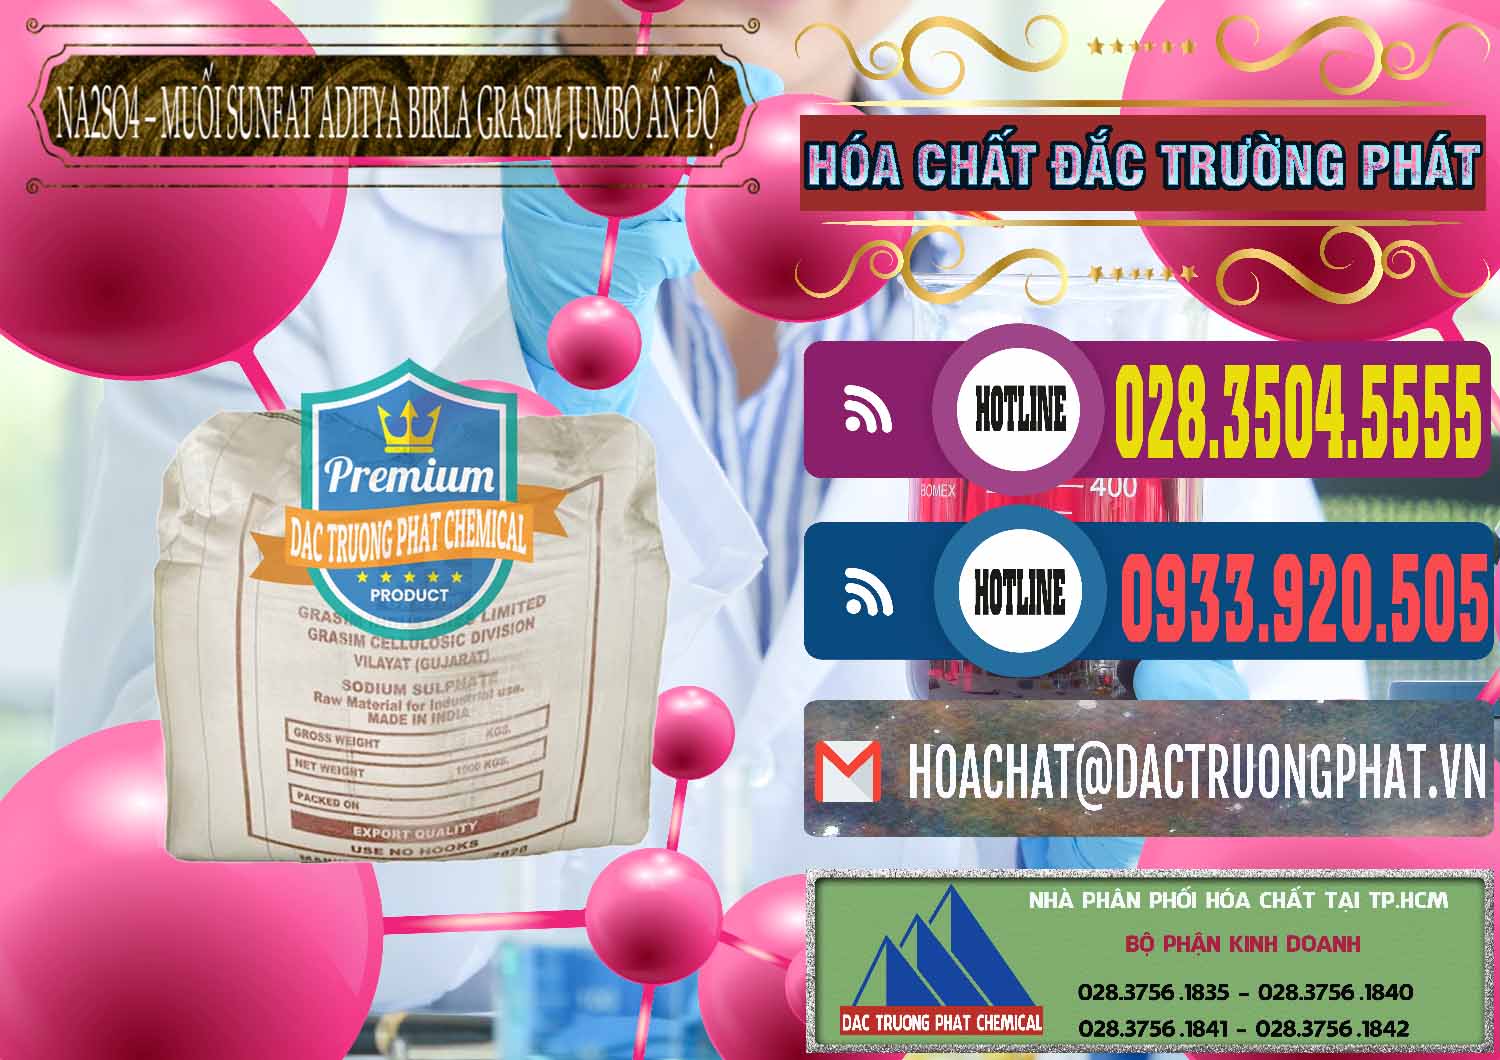 Đơn vị phân phối & bán Sodium Sulphate - Muối Sunfat Na2SO4 Jumbo Bành Aditya Birla Grasim Ấn Độ India - 0357 - Nhập khẩu và phân phối hóa chất tại TP.HCM - muabanhoachat.com.vn